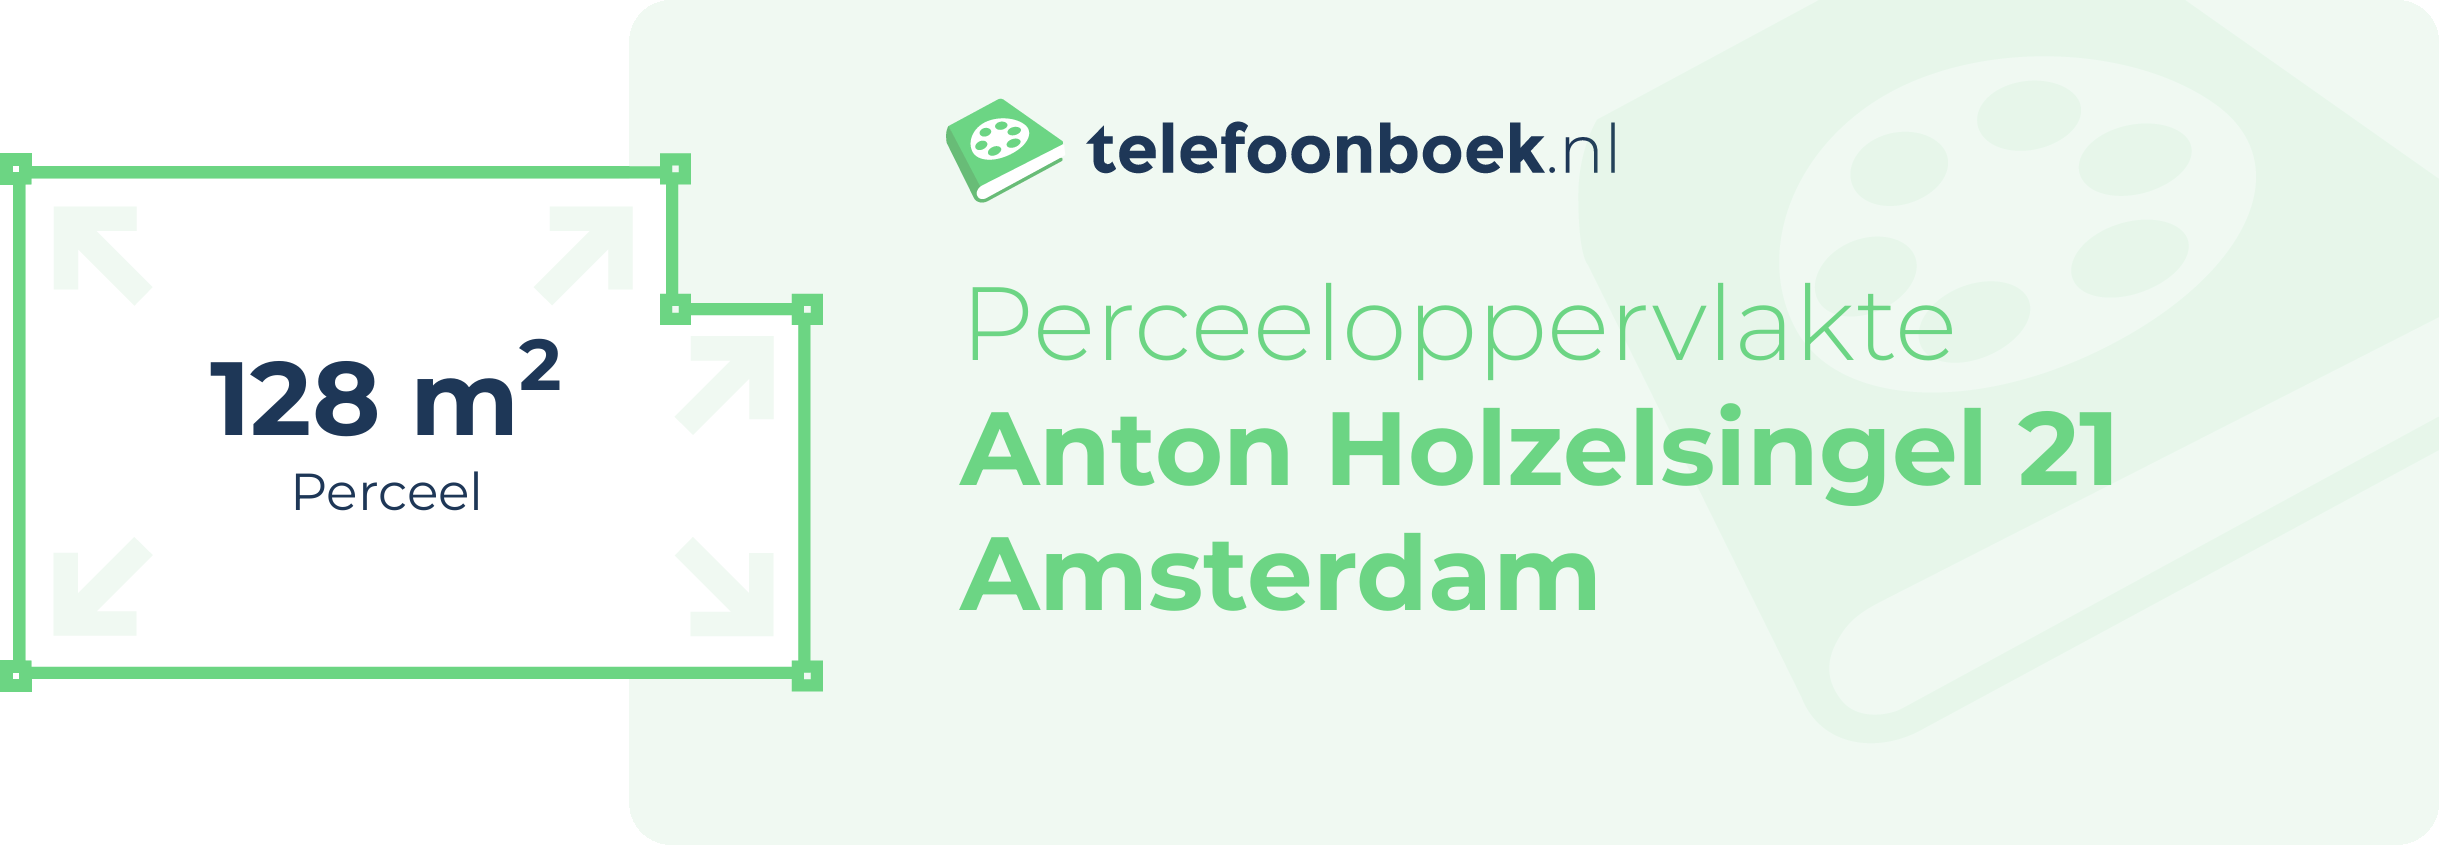 Perceeloppervlakte Anton Holzelsingel 21 Amsterdam